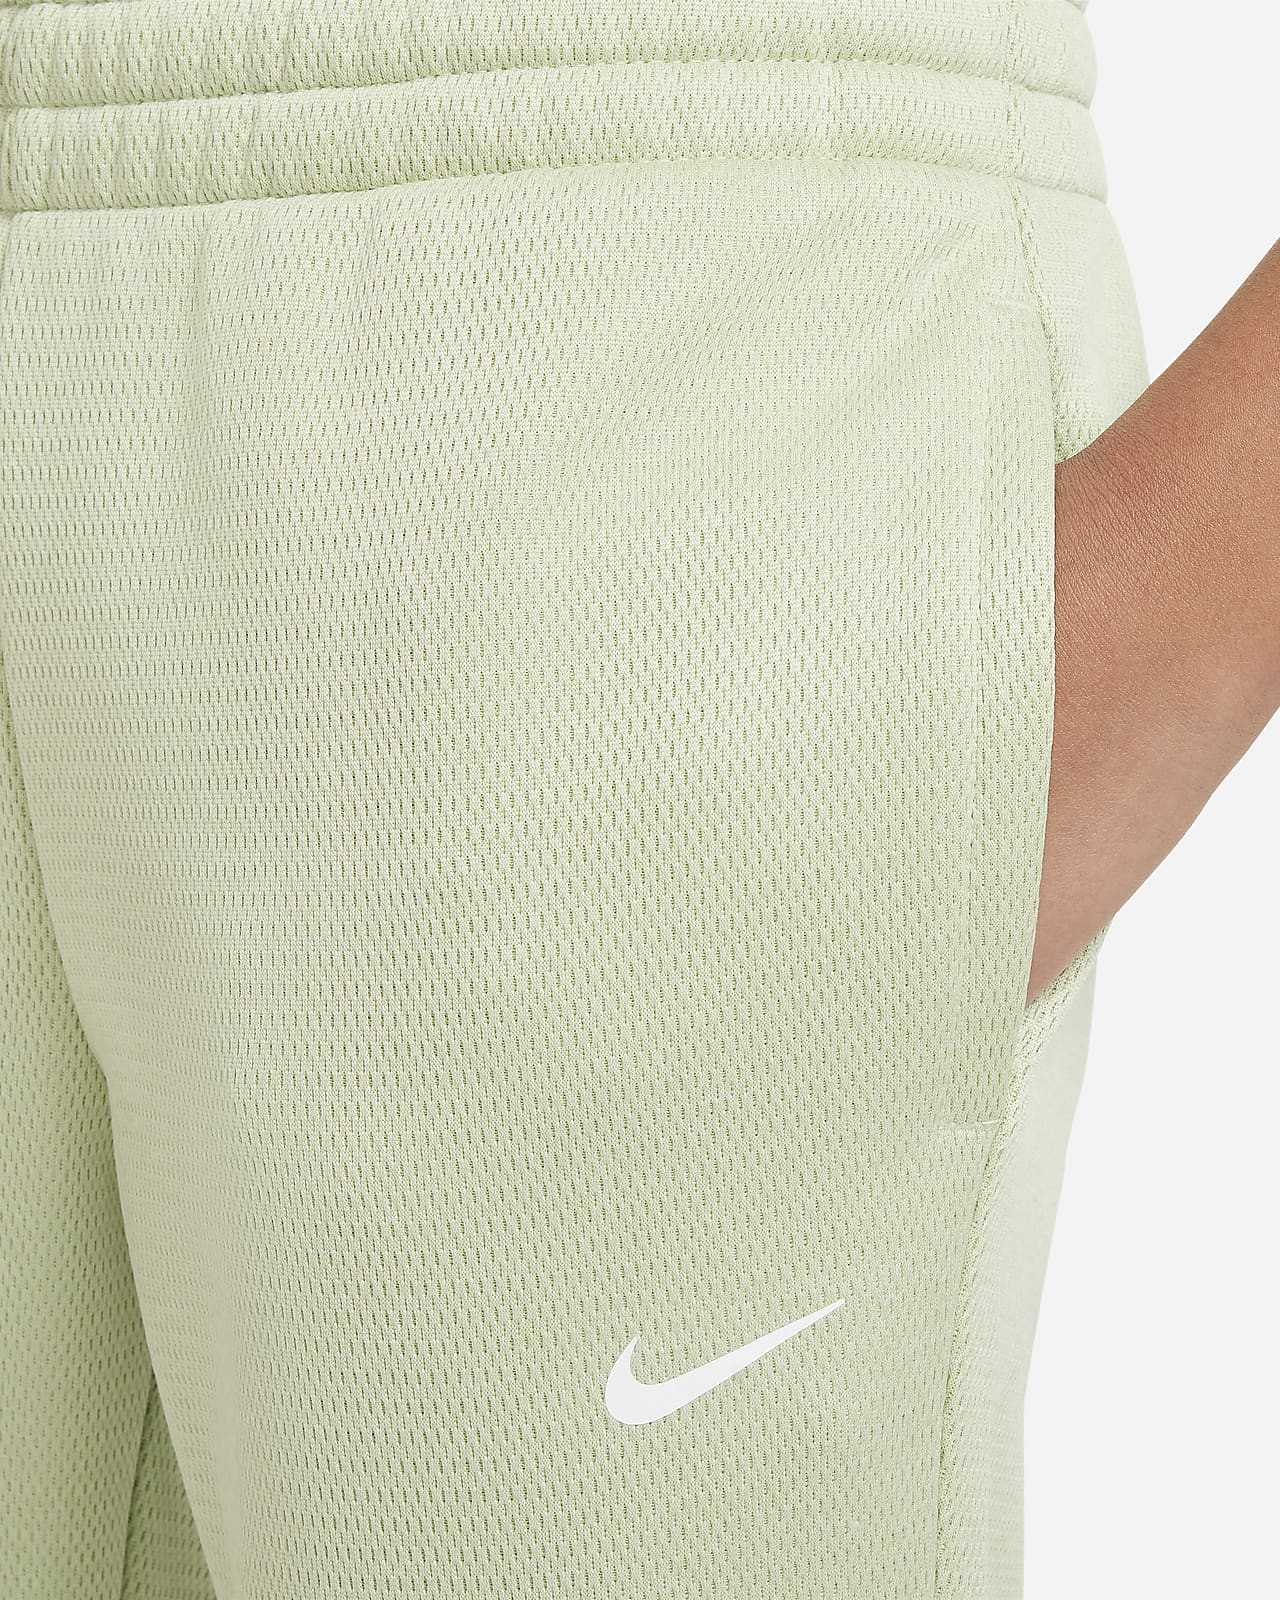 Nike Sportswear Essential CollectionWomen's Fleece Pants$60 